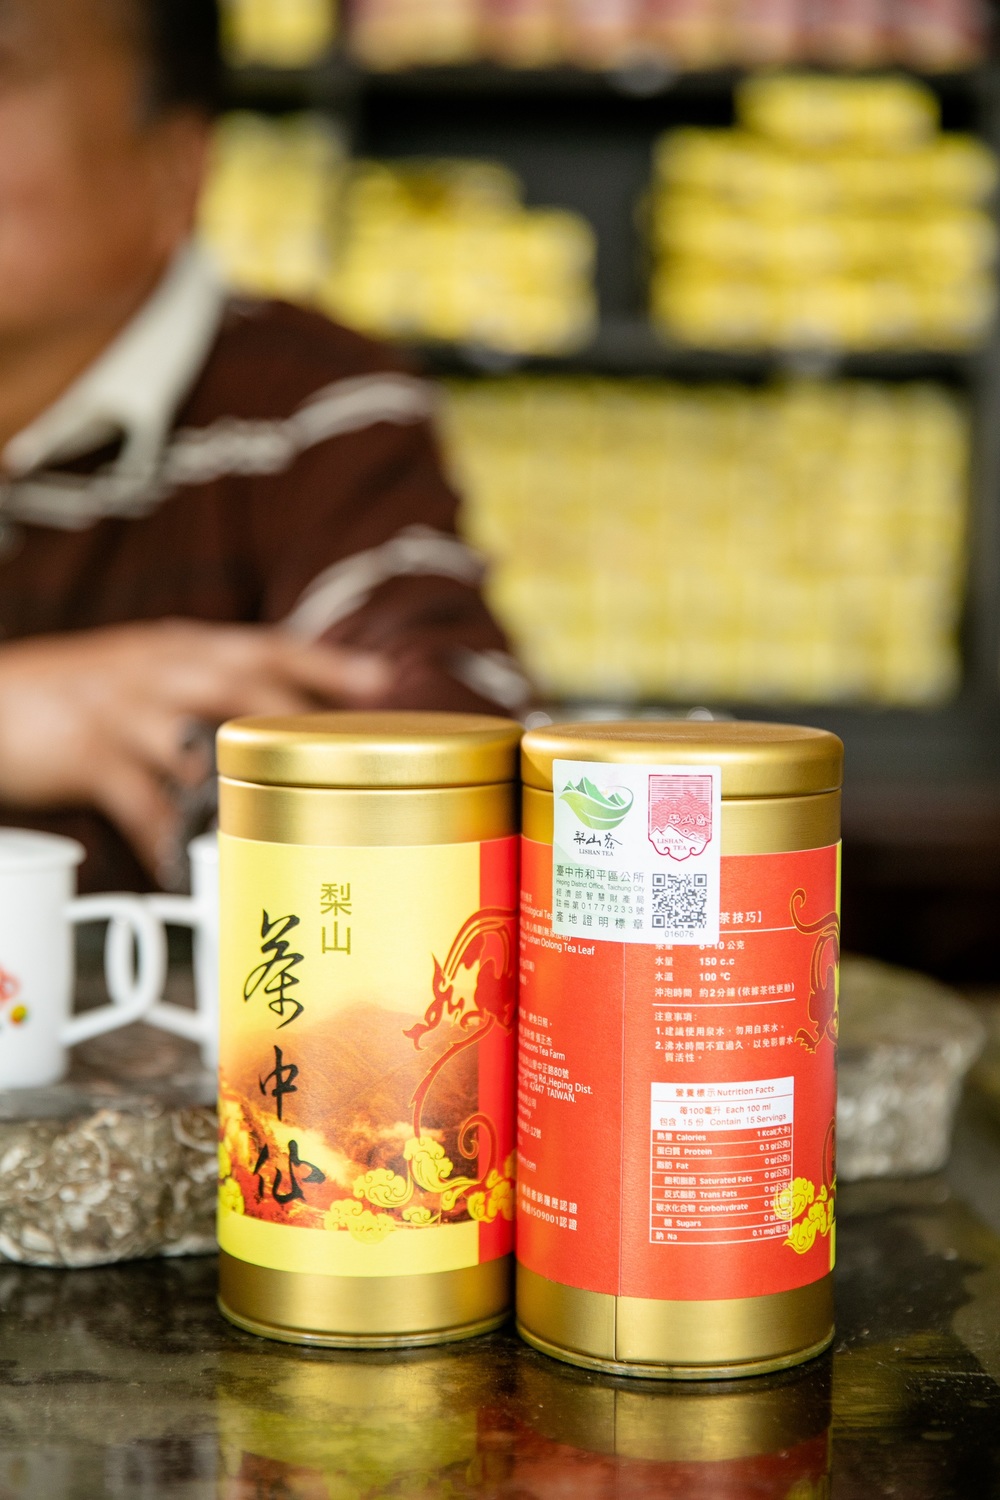 和平區公所呼籲消費者購買梨山茶時要看仔細梨山茶產地標章。    圖：台中市和平區公所提供